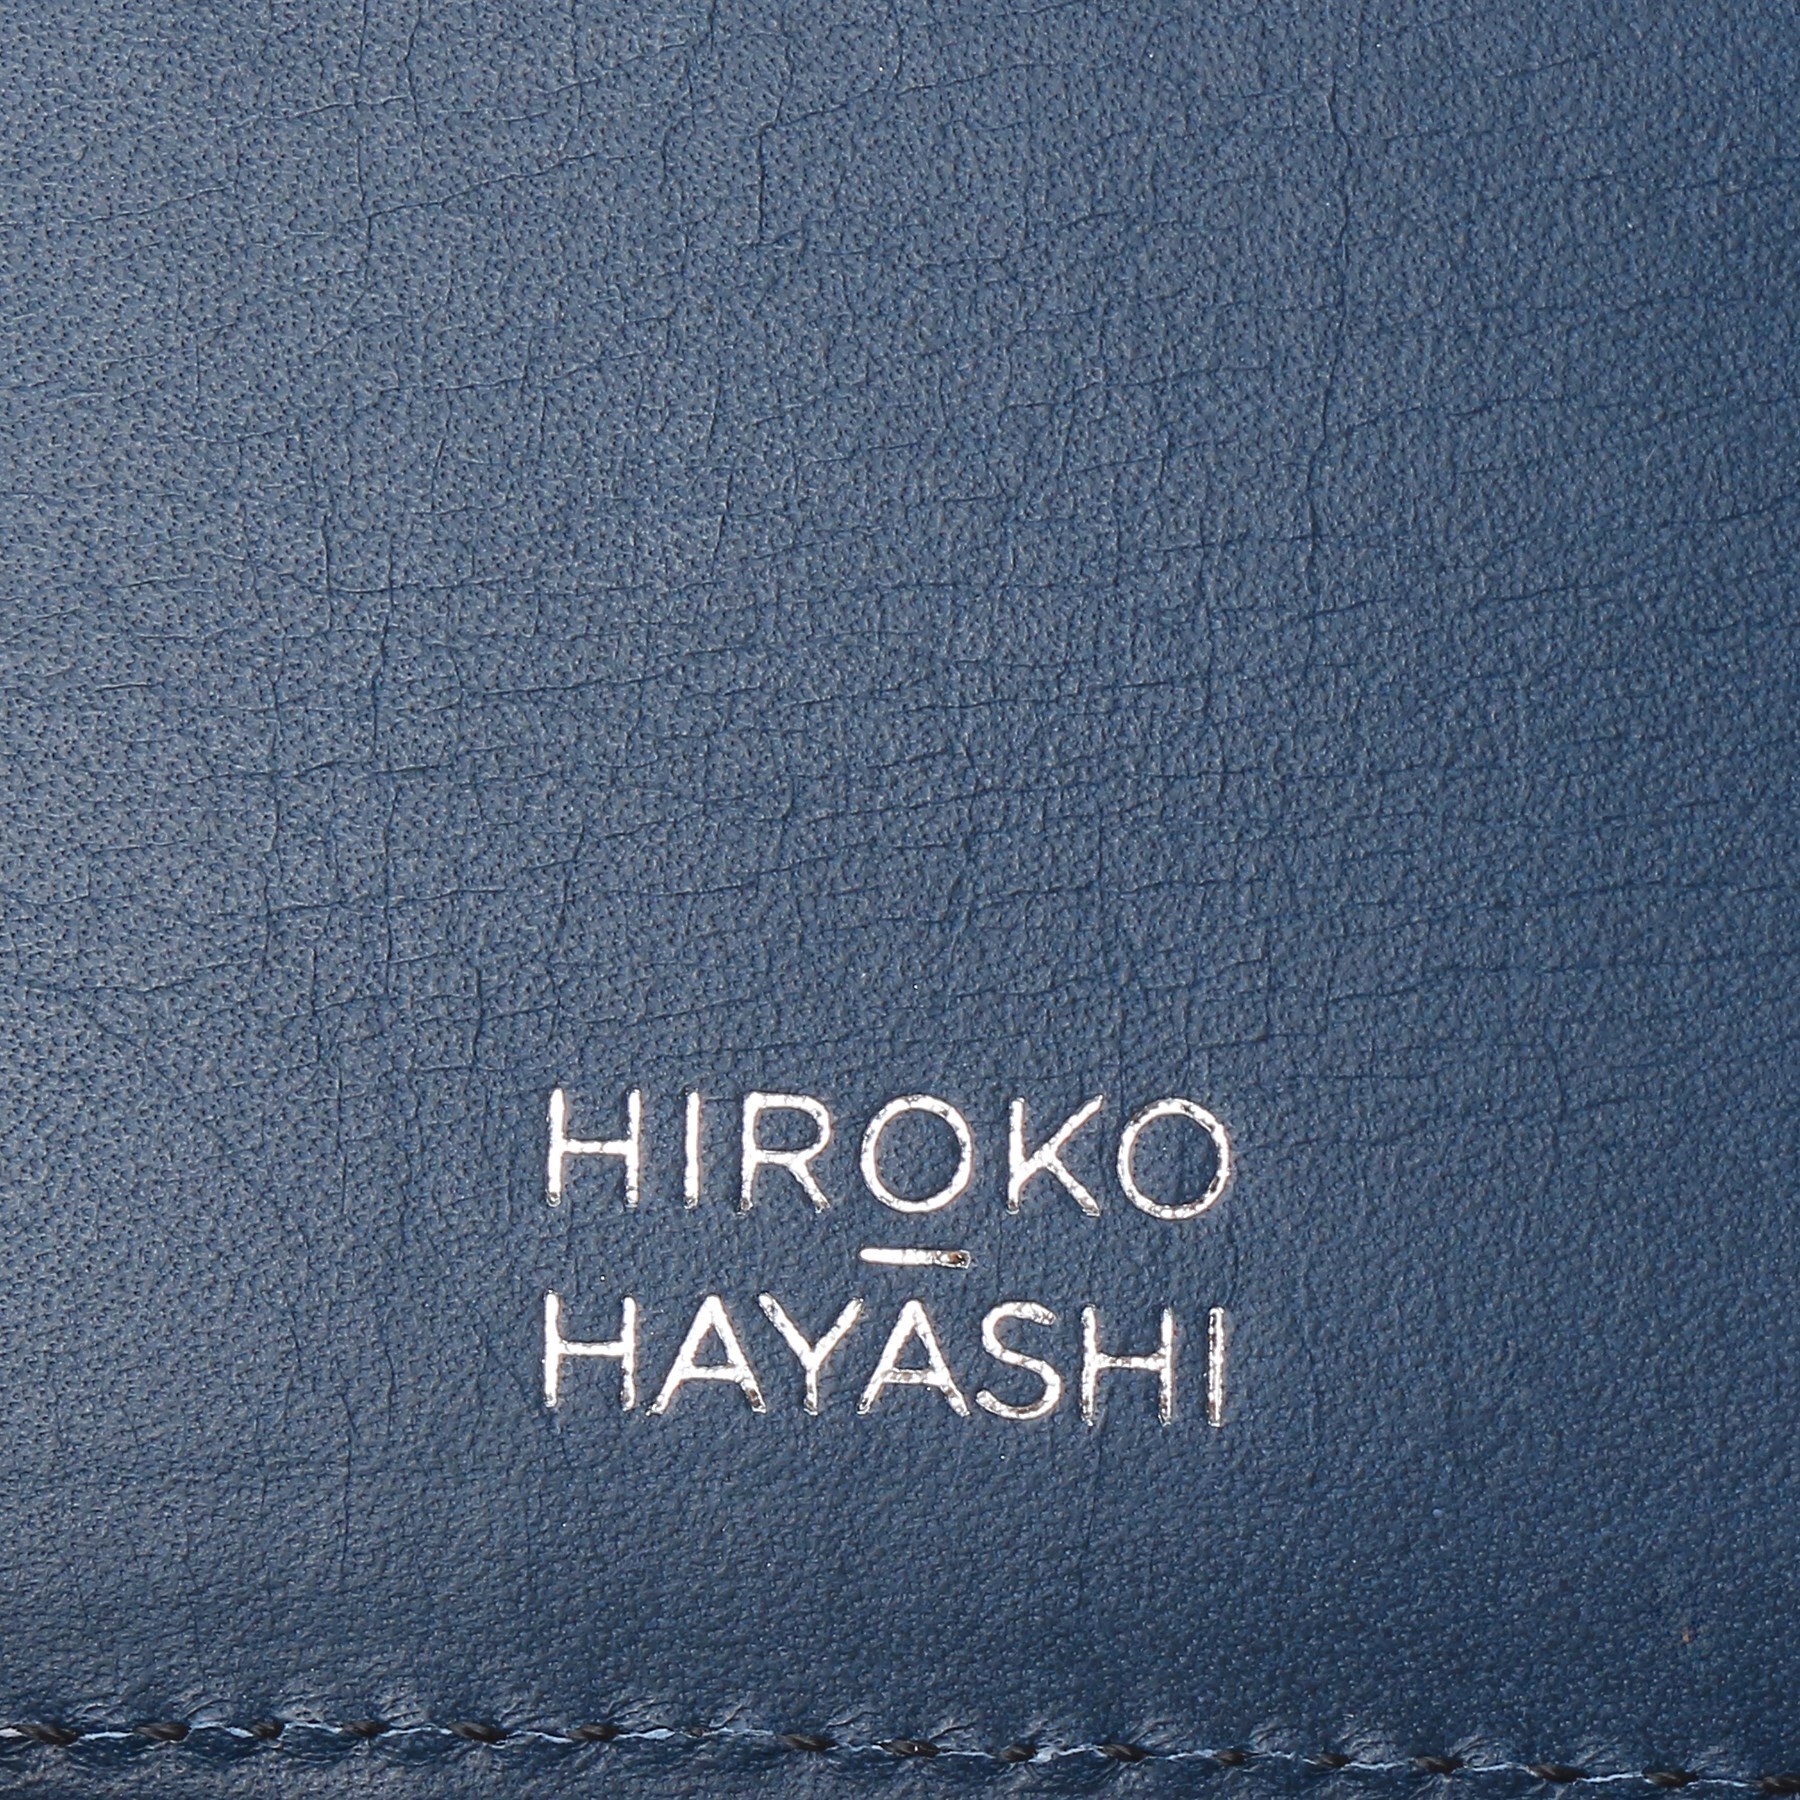 ヒロコ ハヤシ(HIROKO HAYASHI)のDAMASCO(ダマスコ)マルチモバイルケース14